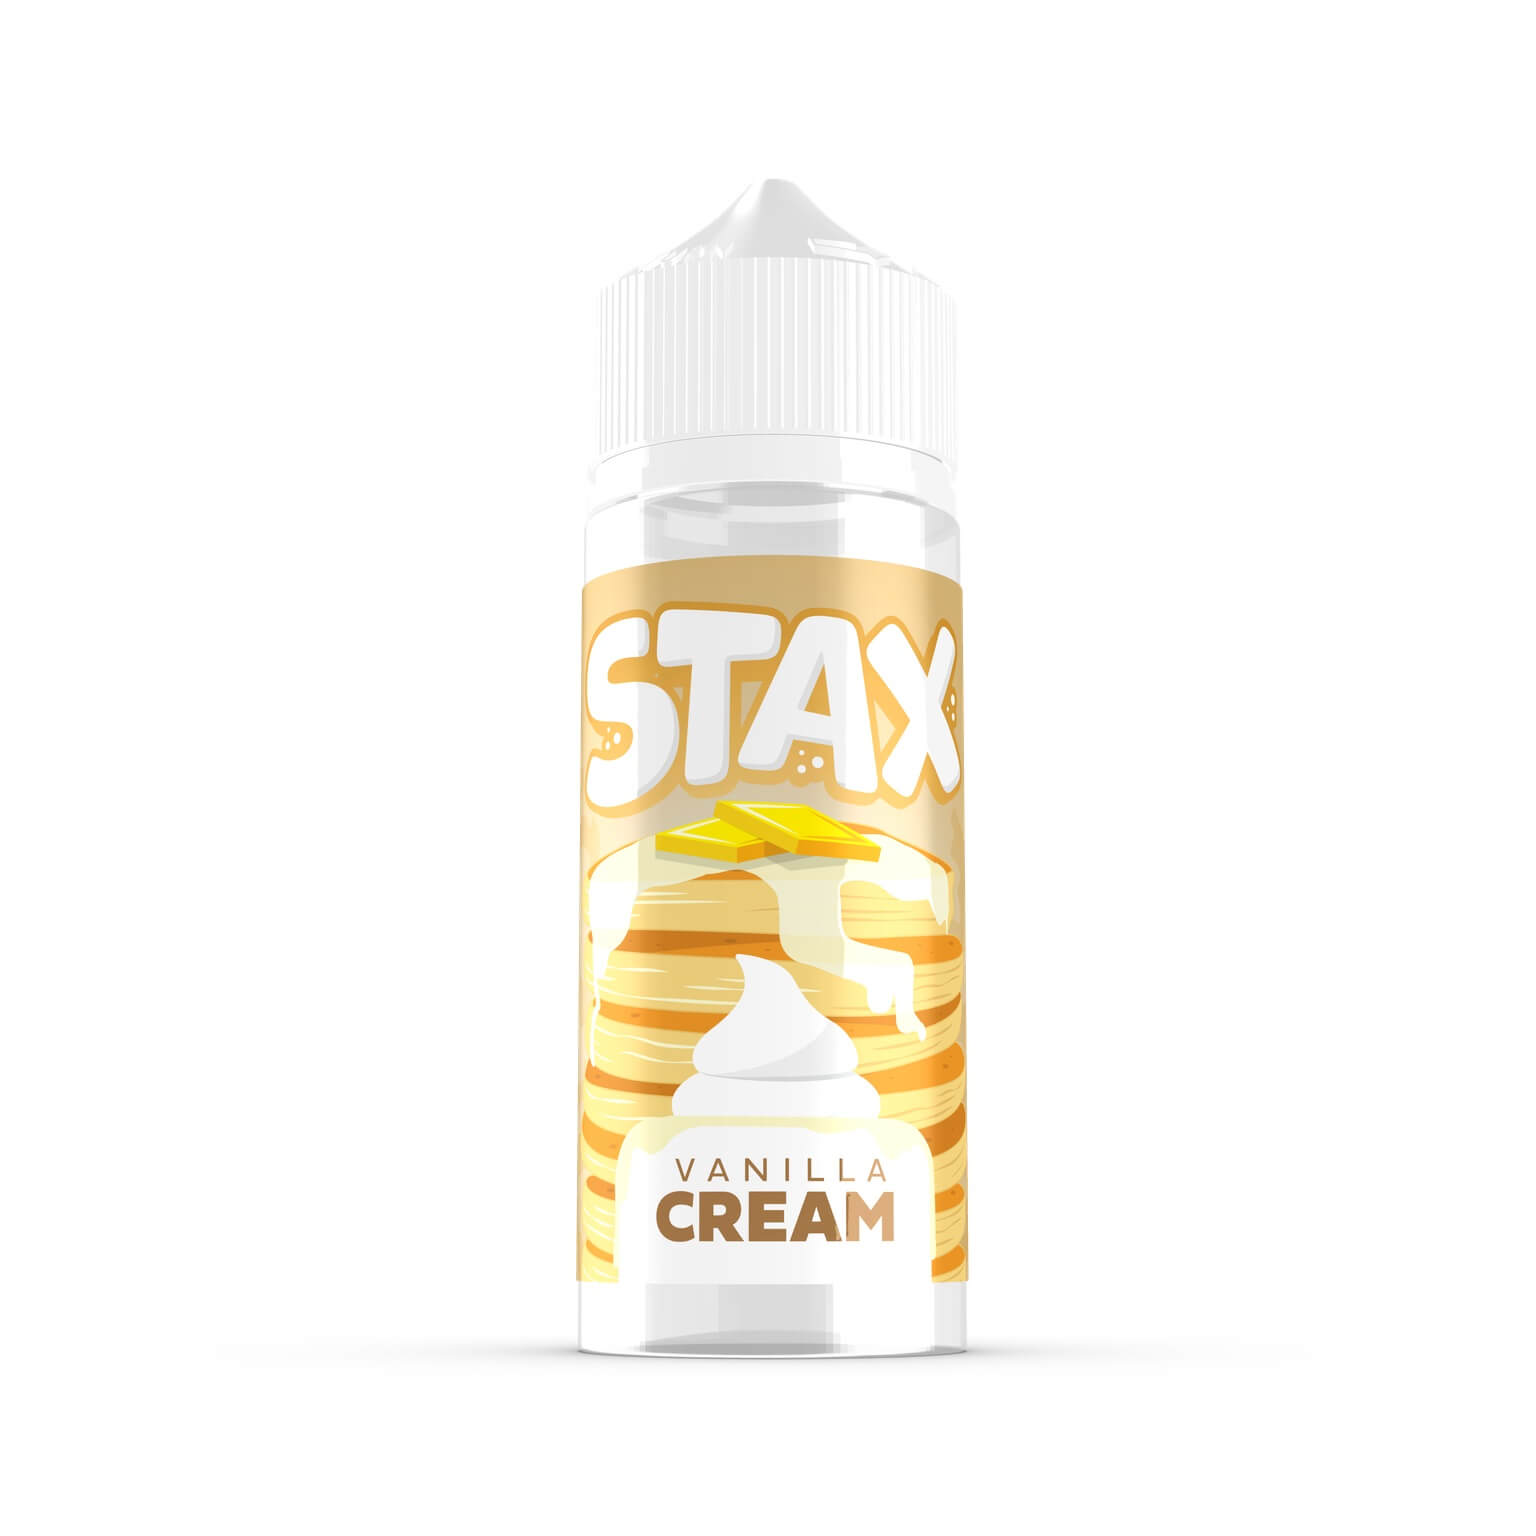 Stax vanilla cream 100ml shortfill e-liquid available at dispergo vaping uk